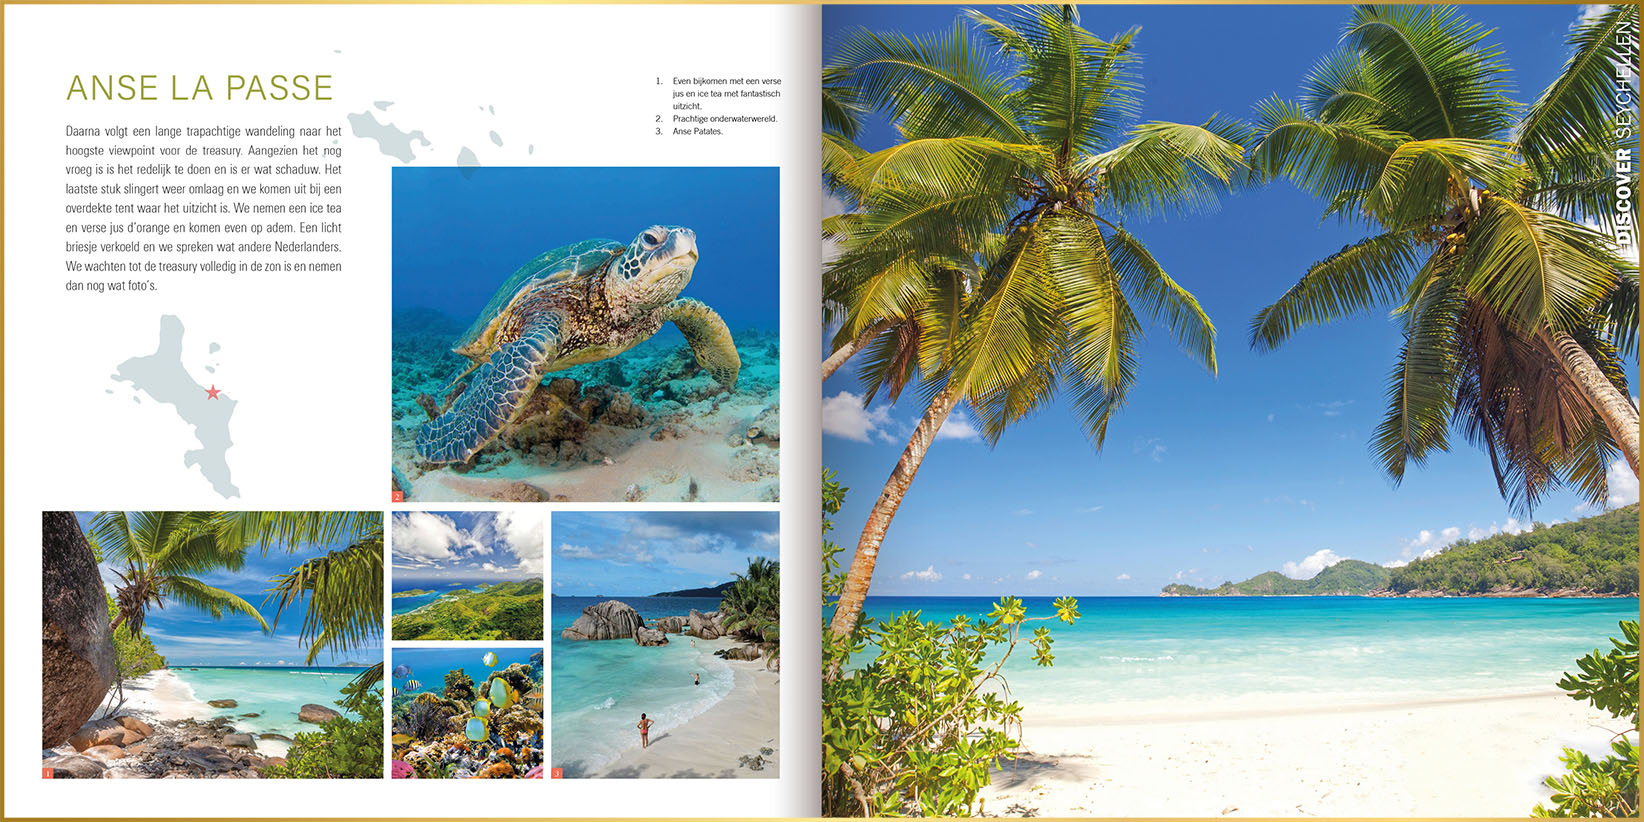 Voorbeeld ontwerpstijl magazine met foto's van zeeschildpad, kleurrijke vissen en wuivende palmbomen bij tropisch strand